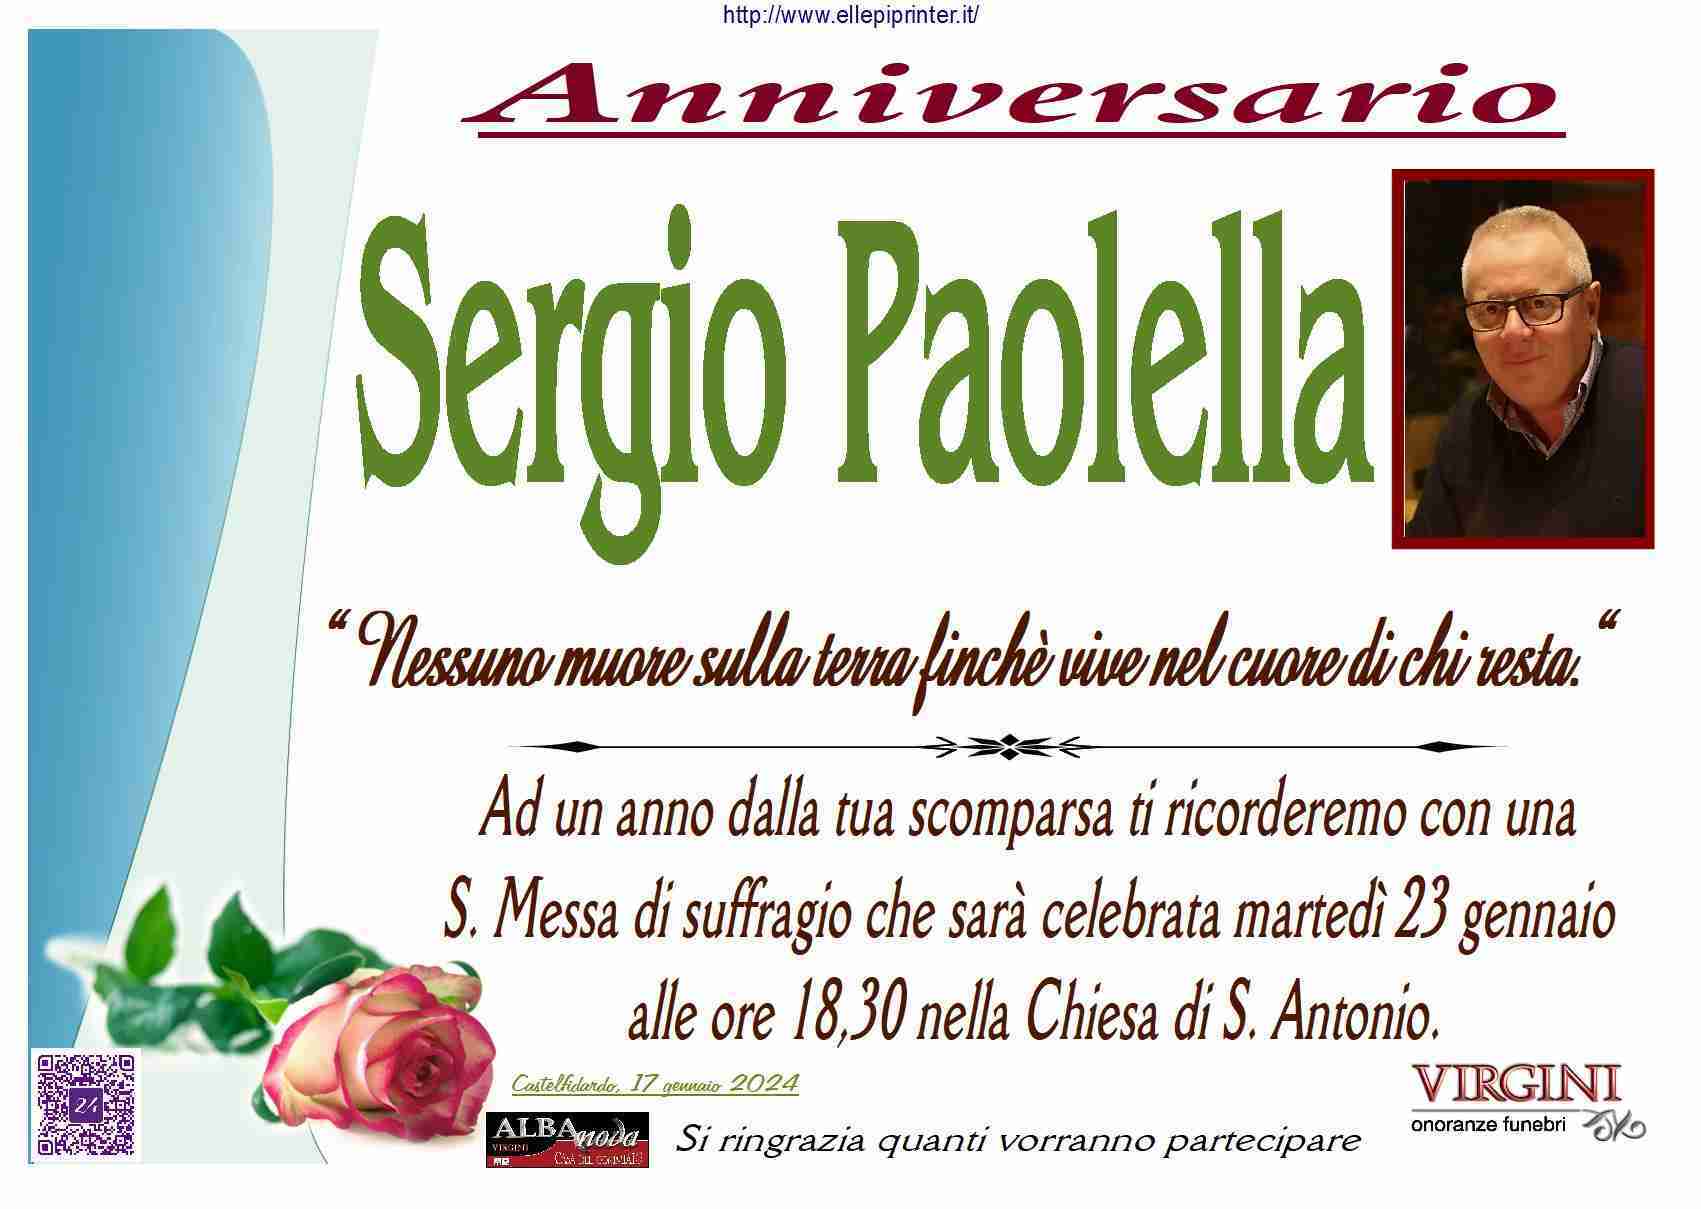 Sergio Paolella